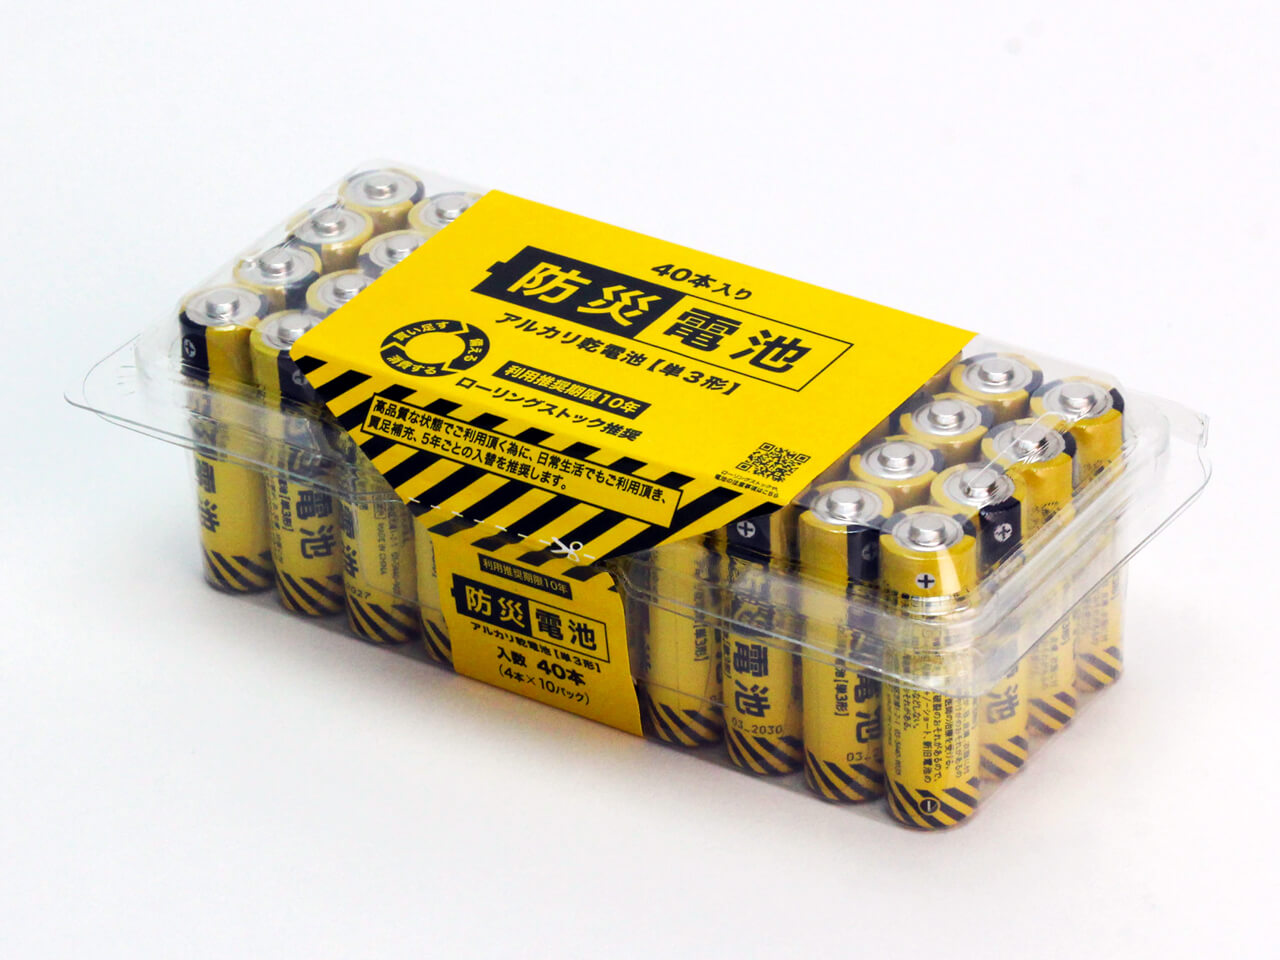 長寿命の単三アルカリ電池「防災電池」が販売開始 推奨期限10年で1パック40本入り1980円 もしもの時の備えに - ねとらぼ